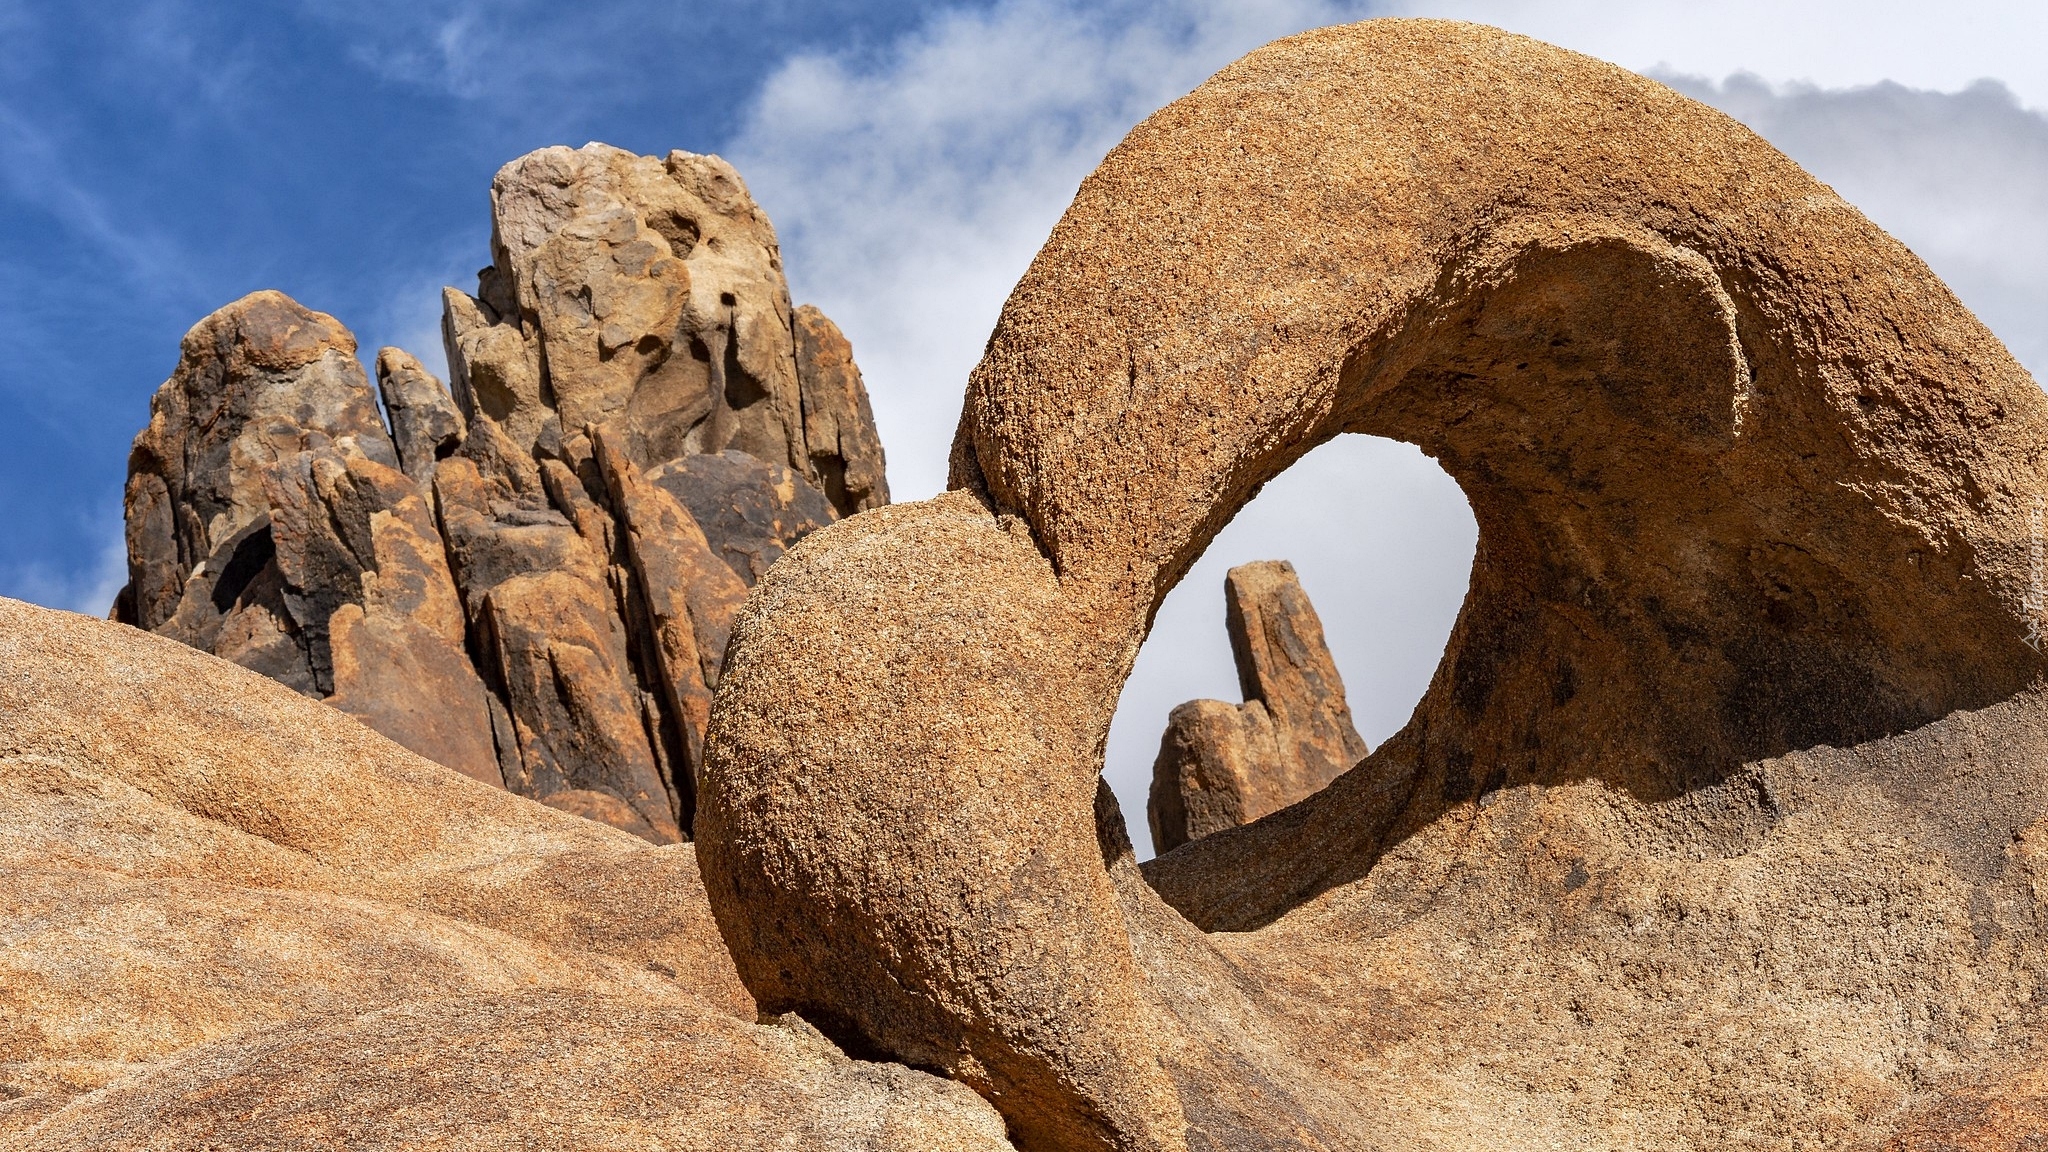 Łuk skalny, Mobius Arch, Skały, Góry, Alabama Hills, Kalifornia, Stany Zjednoczone